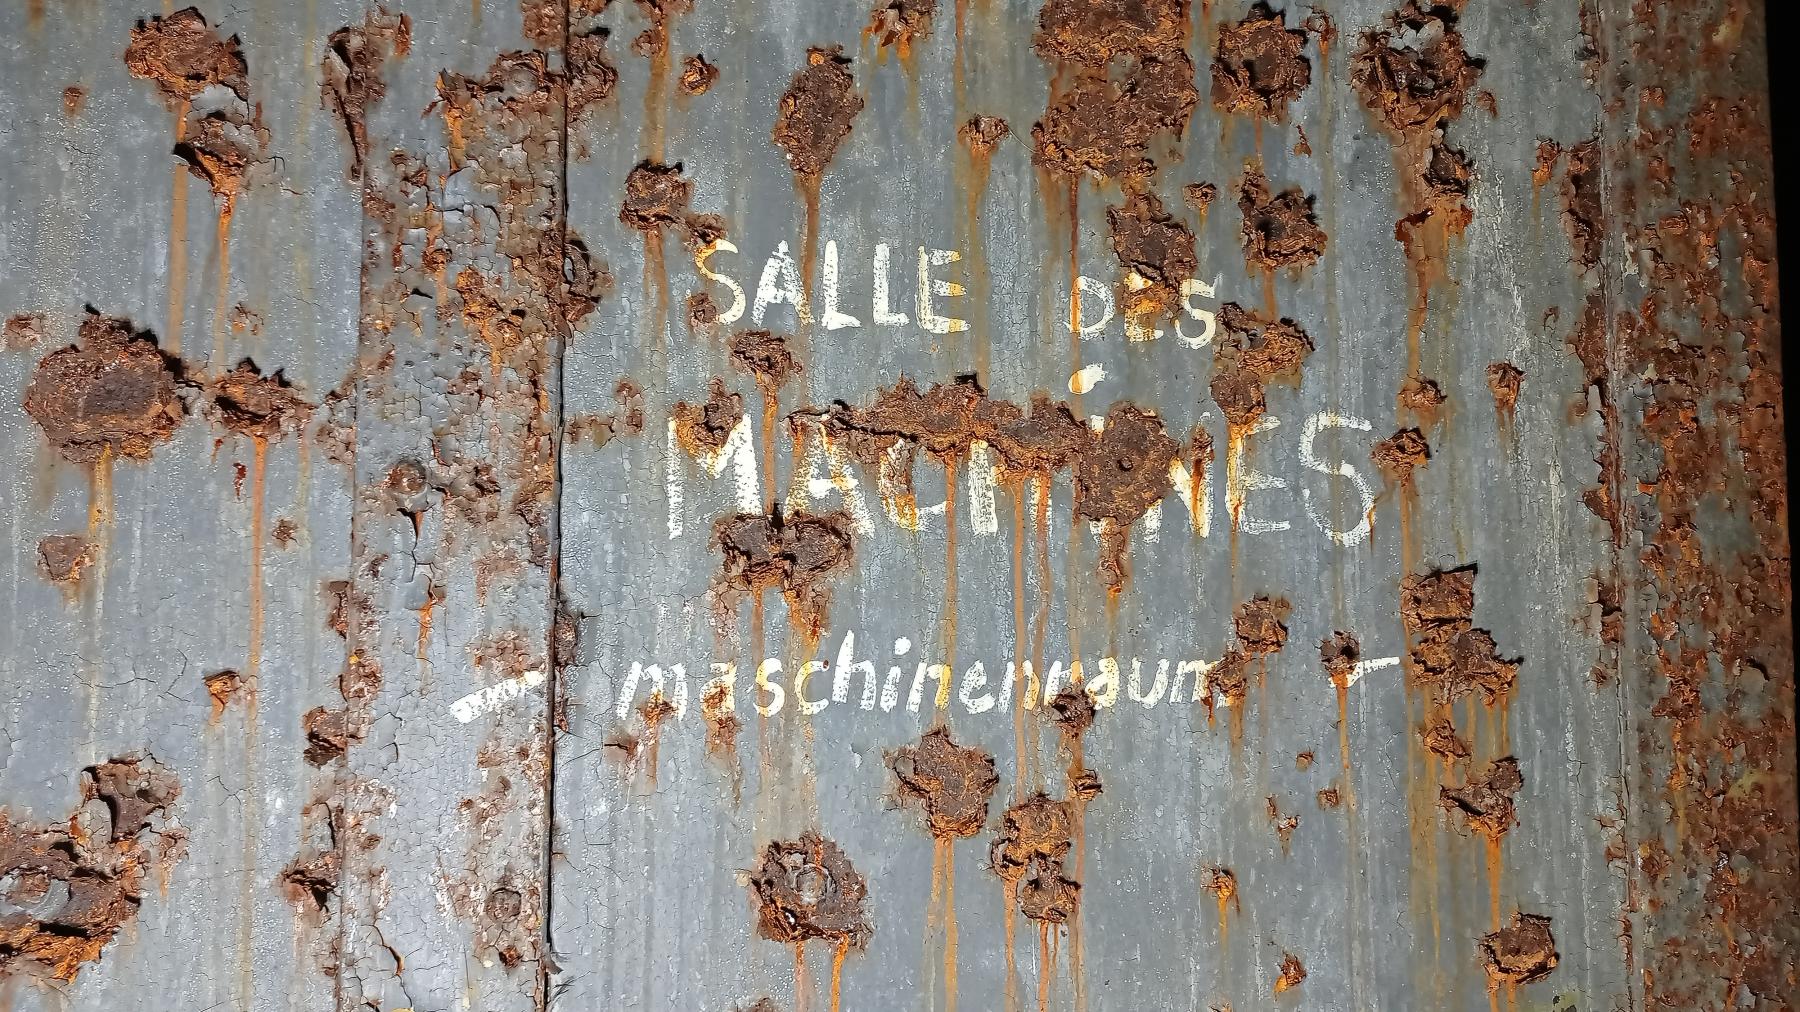 Ligne Maginot - FROHMUHL (PC DU QUARTIER KAPELLENHOF - II/153° RIF) - (Abri) - Détail des inscriptions: SALLE DES MACHINES
-maschinenraum-